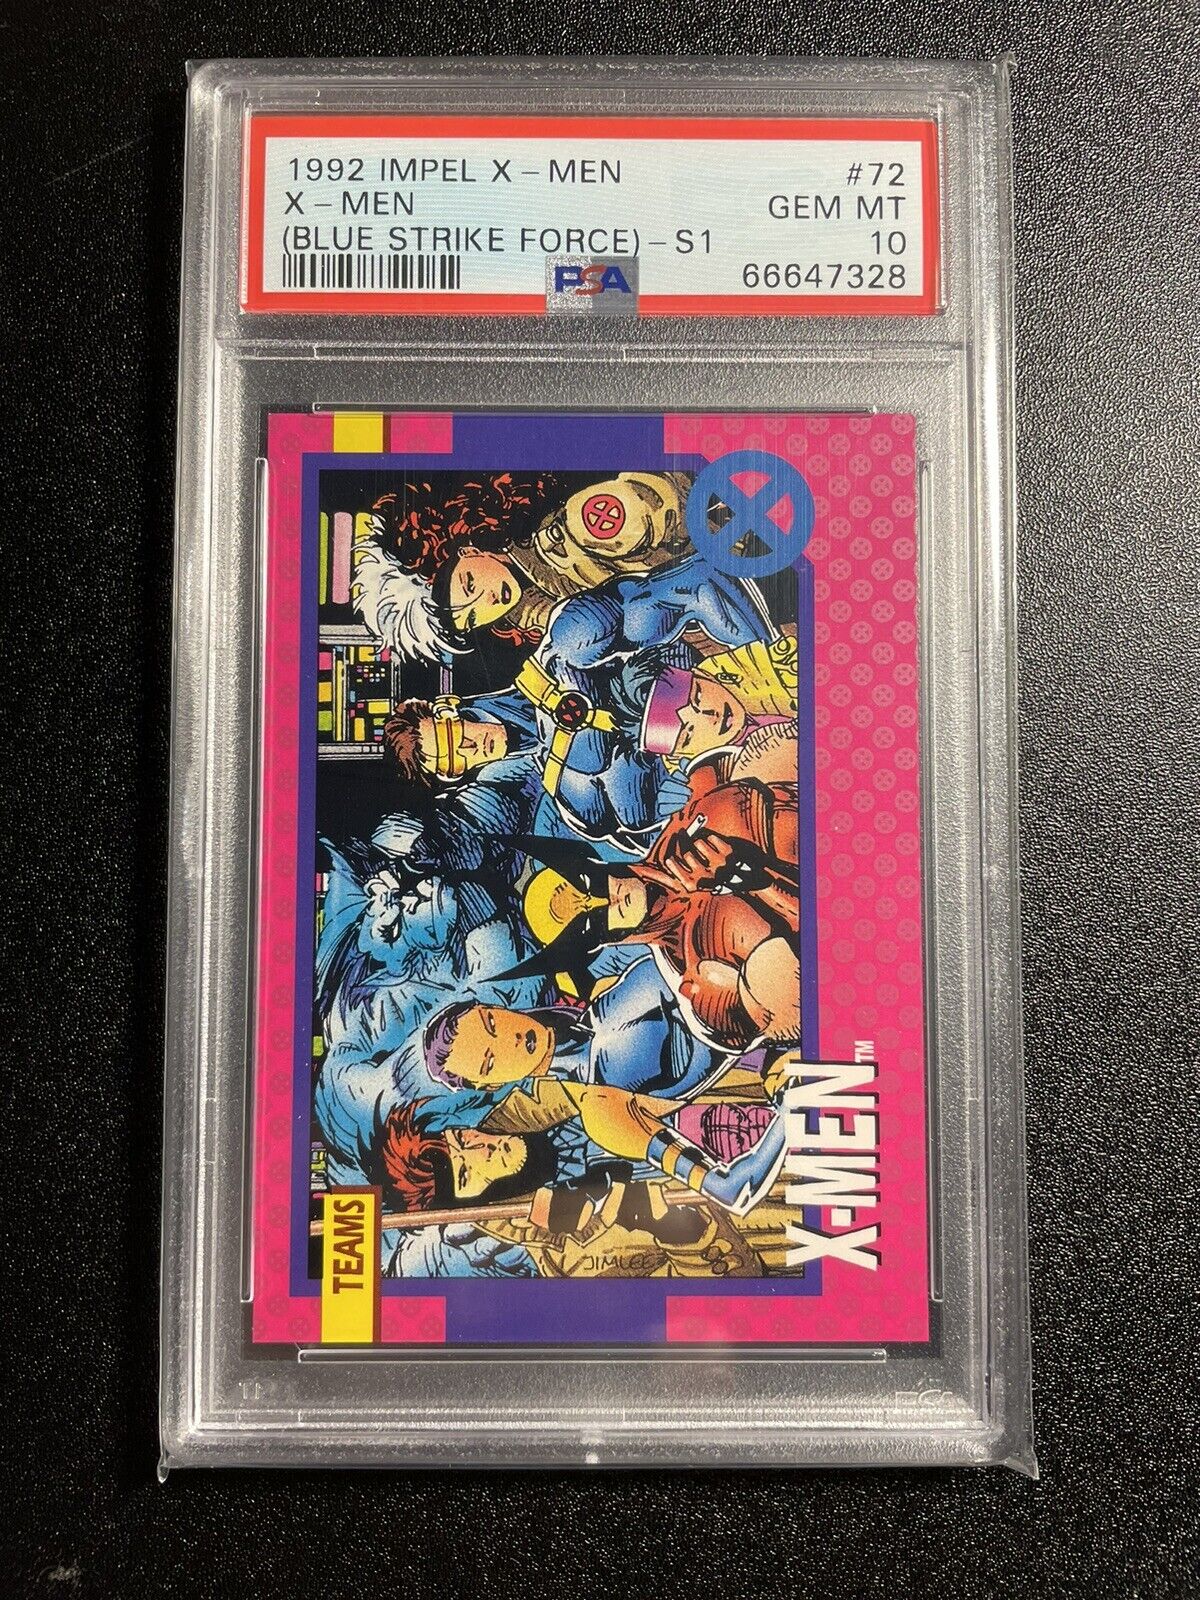 1992 Impel X-Men Blue Strike Force- S1 #72 PSA 10 GEM MINT